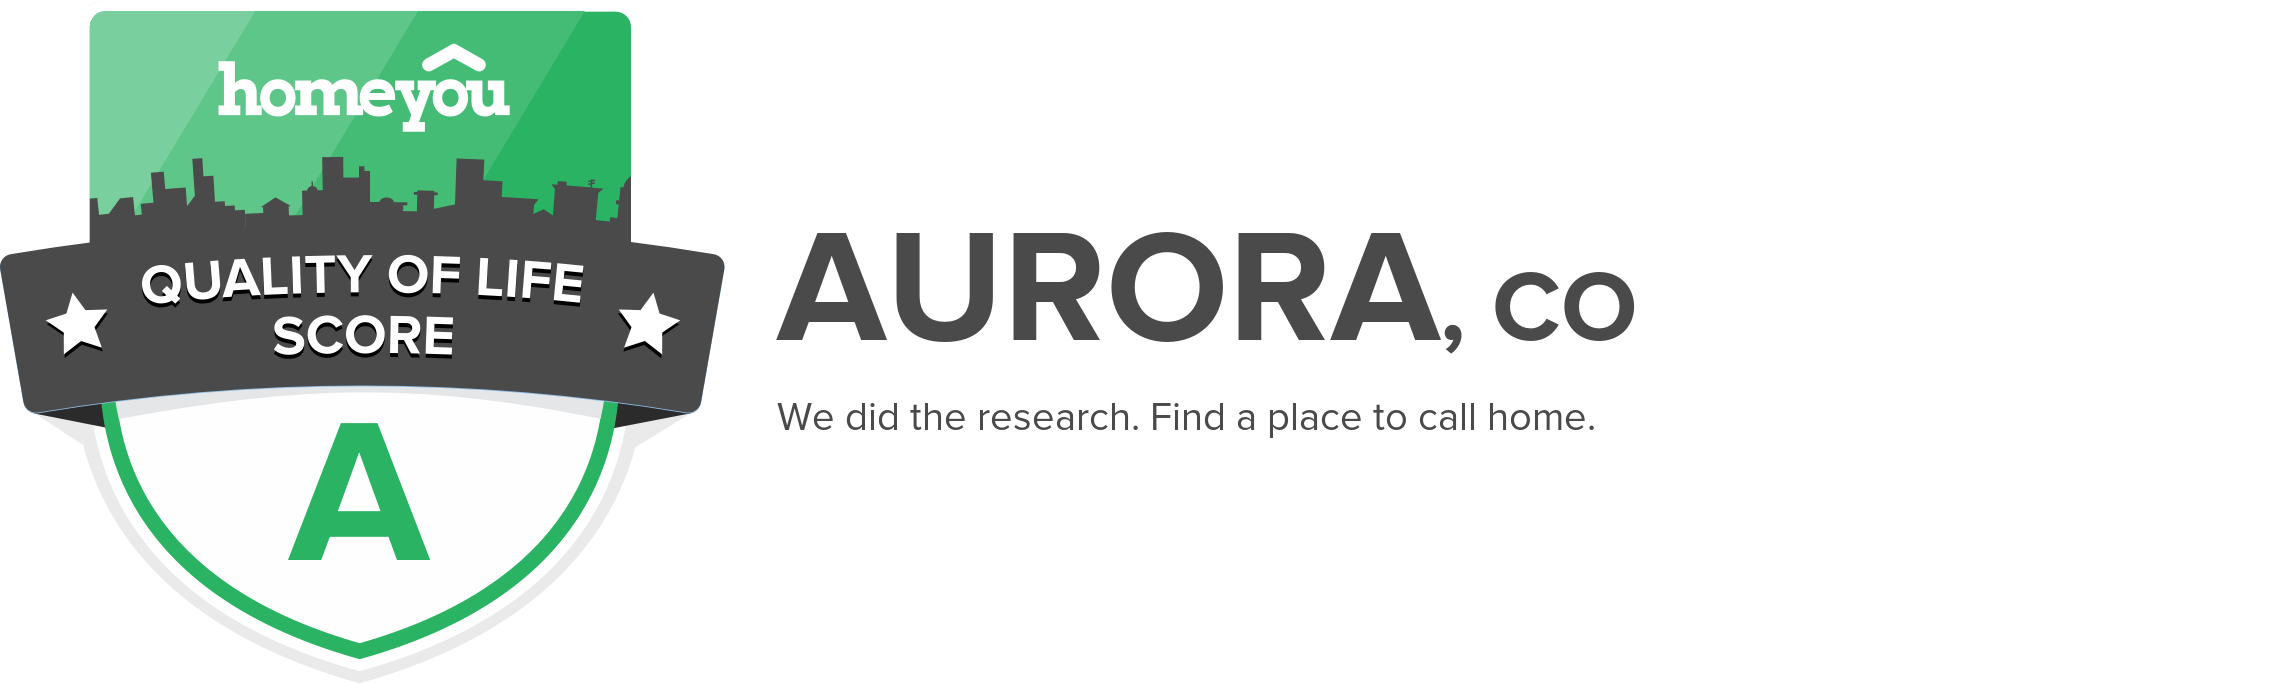 Aurora, CO